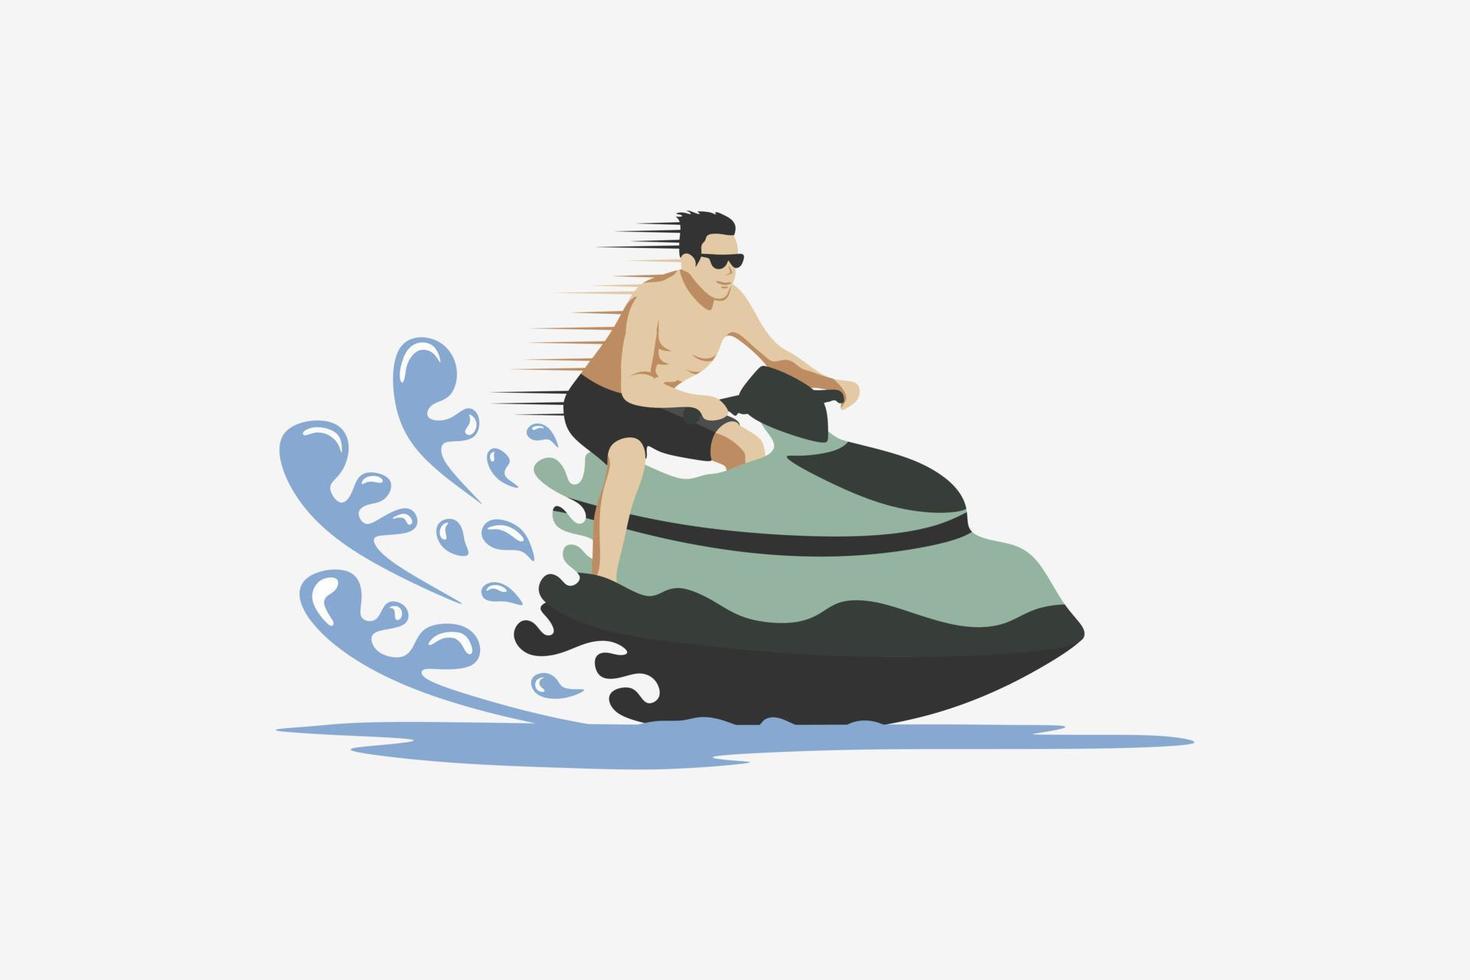 conception d'une personne conduisant un scooter des mers, illustration vectorielle d'un scooter des mers de sports de plein air sur la plage ou la mer dans un concept créatif de couleur pastel. vecteur